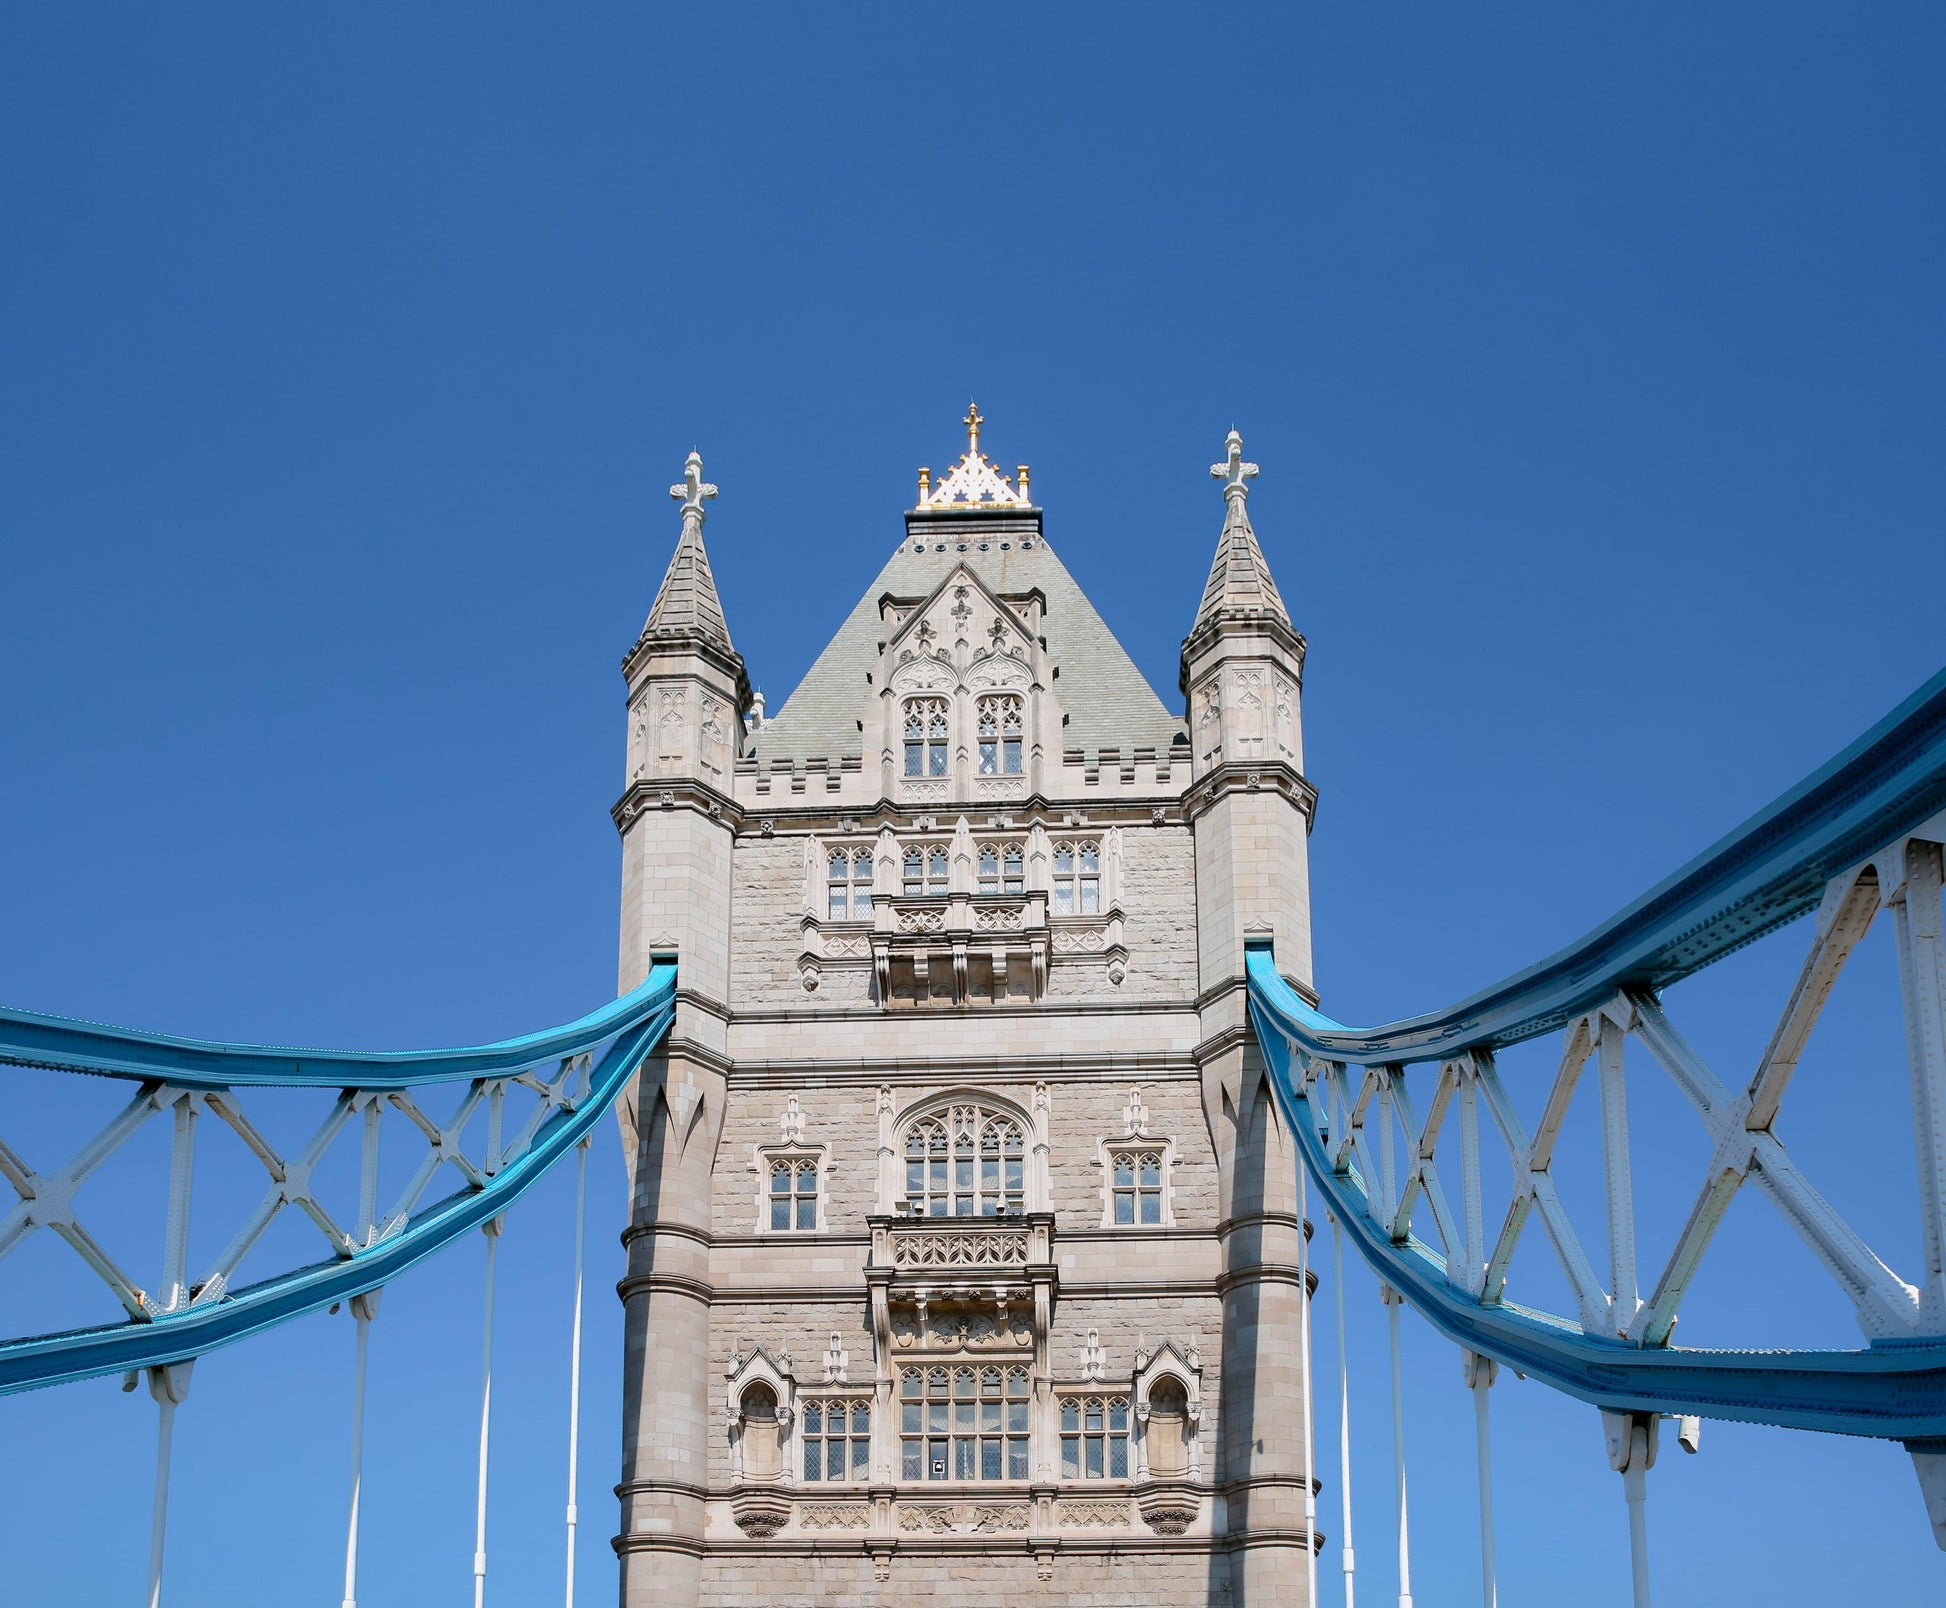 London's Tower Bridge | London Print - Departures Print Shop